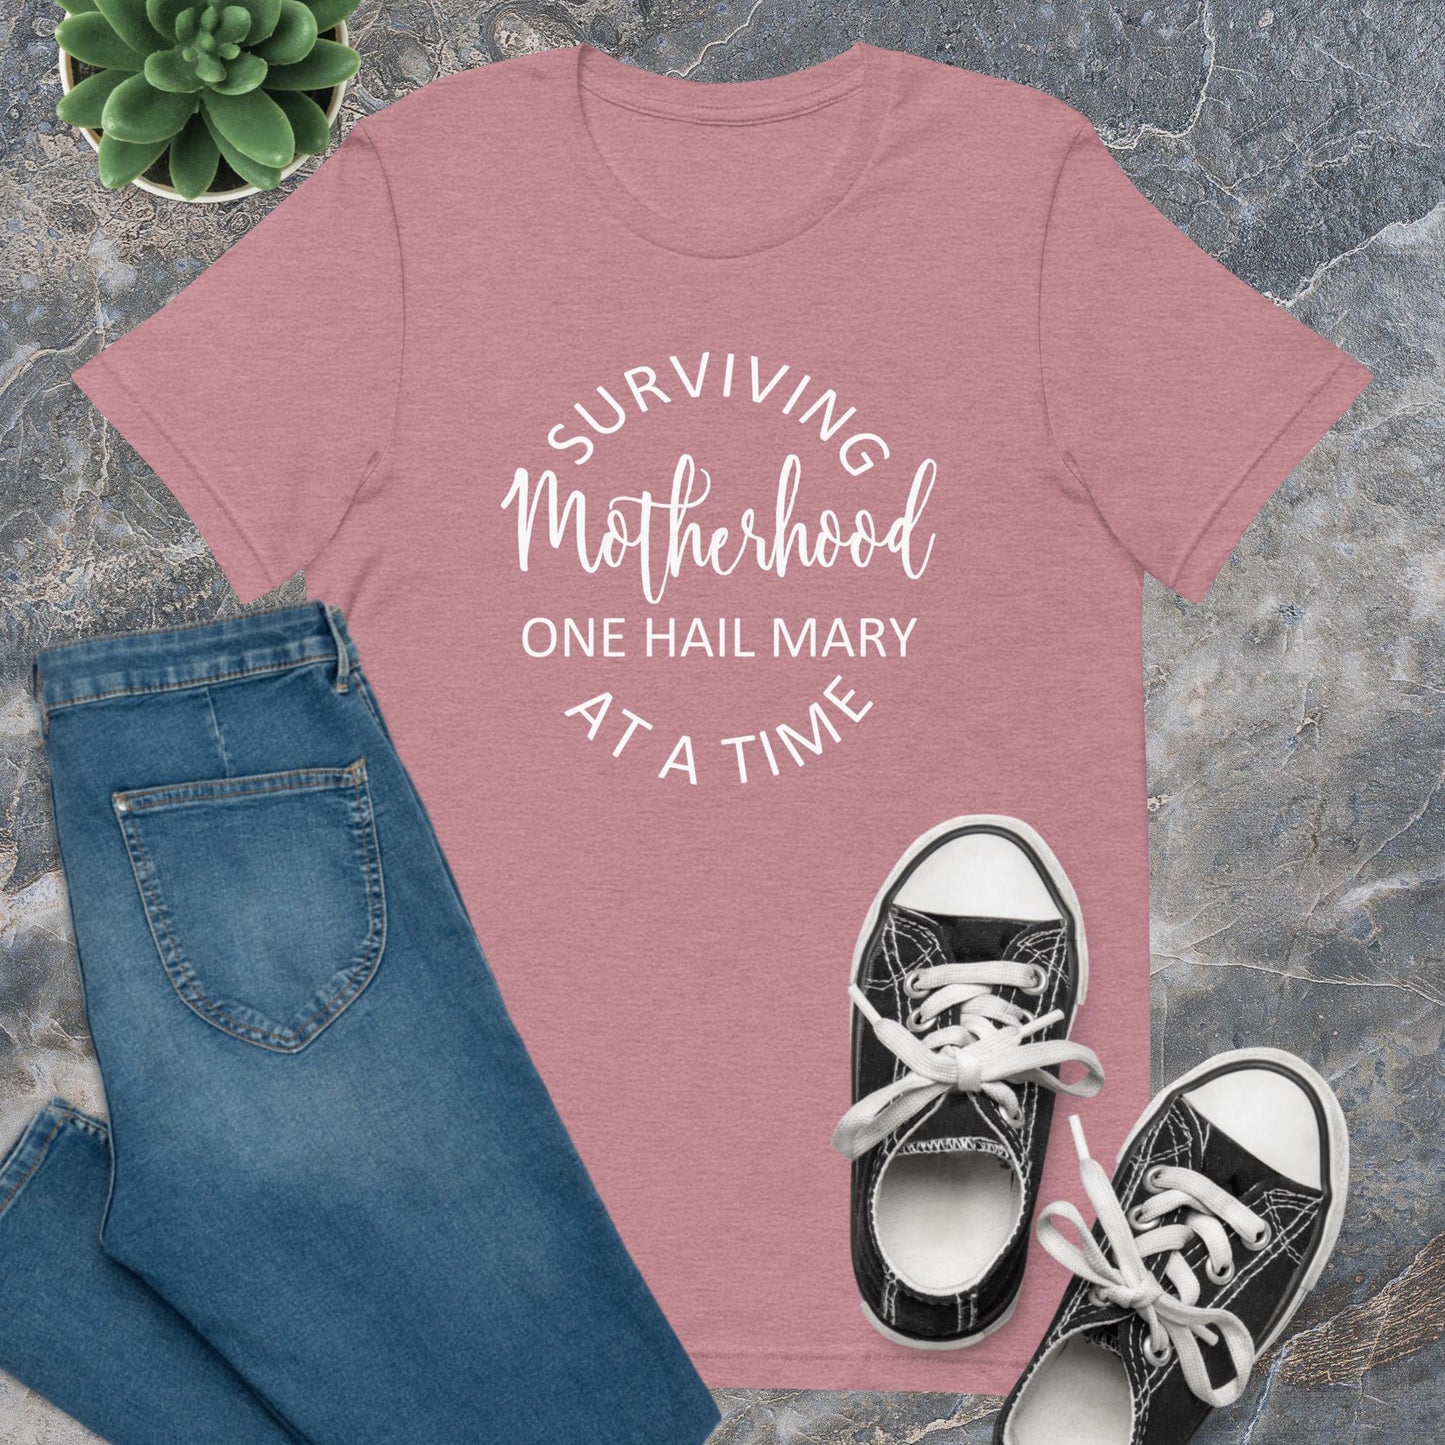 Surviving Motherhood T-shirt